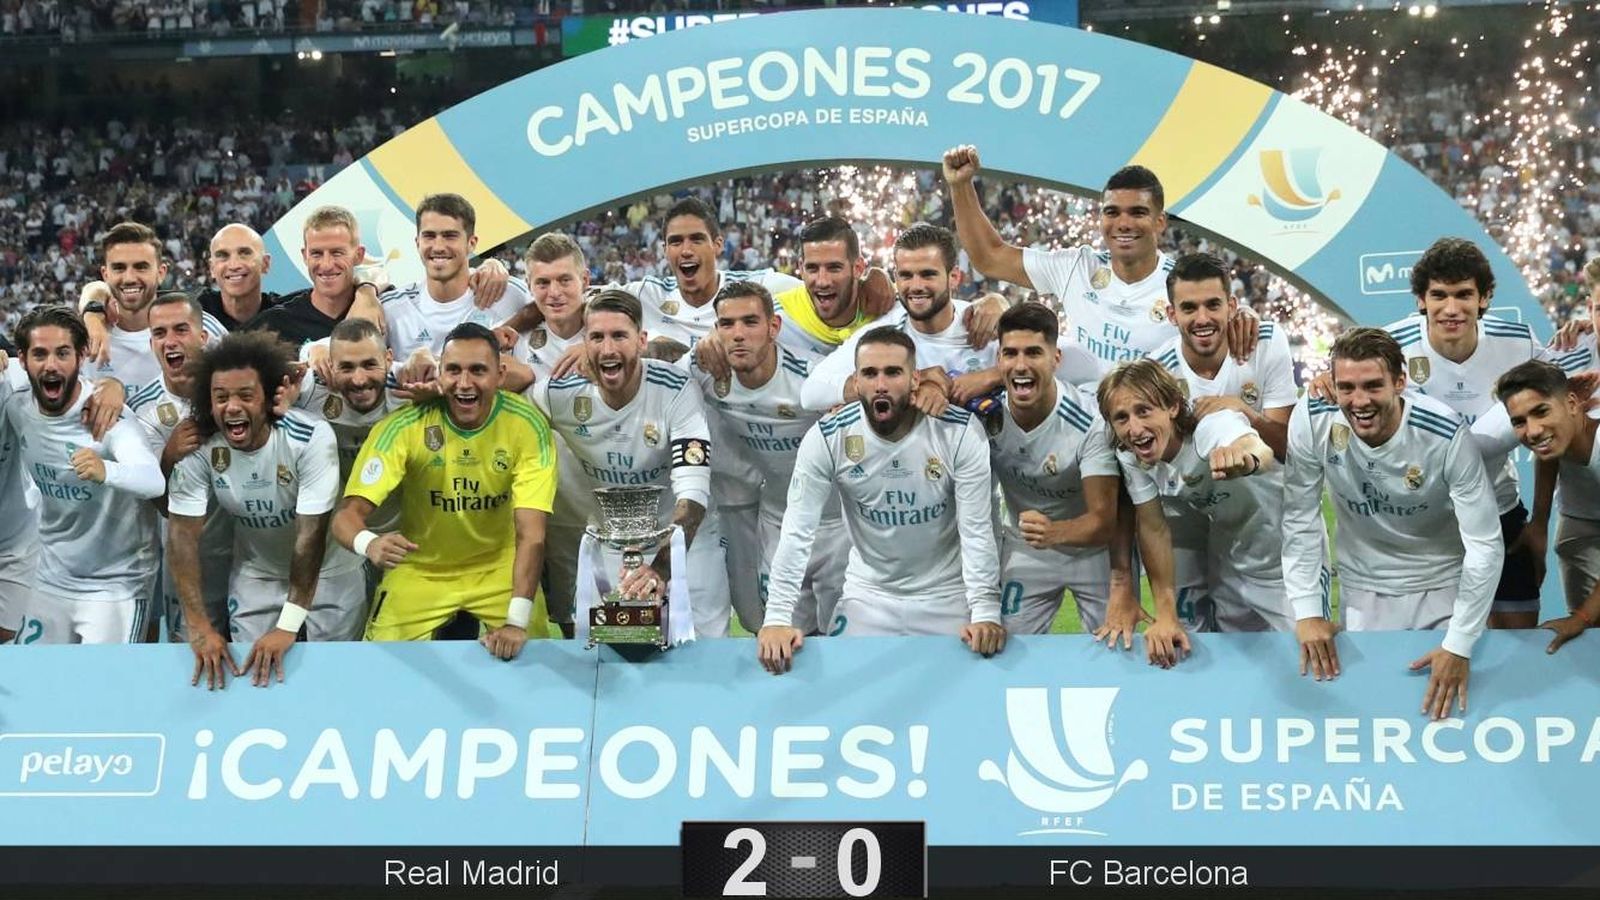 Supercopa De Espaa El Madrid Le Coge El Gusto A Darle Repasos De